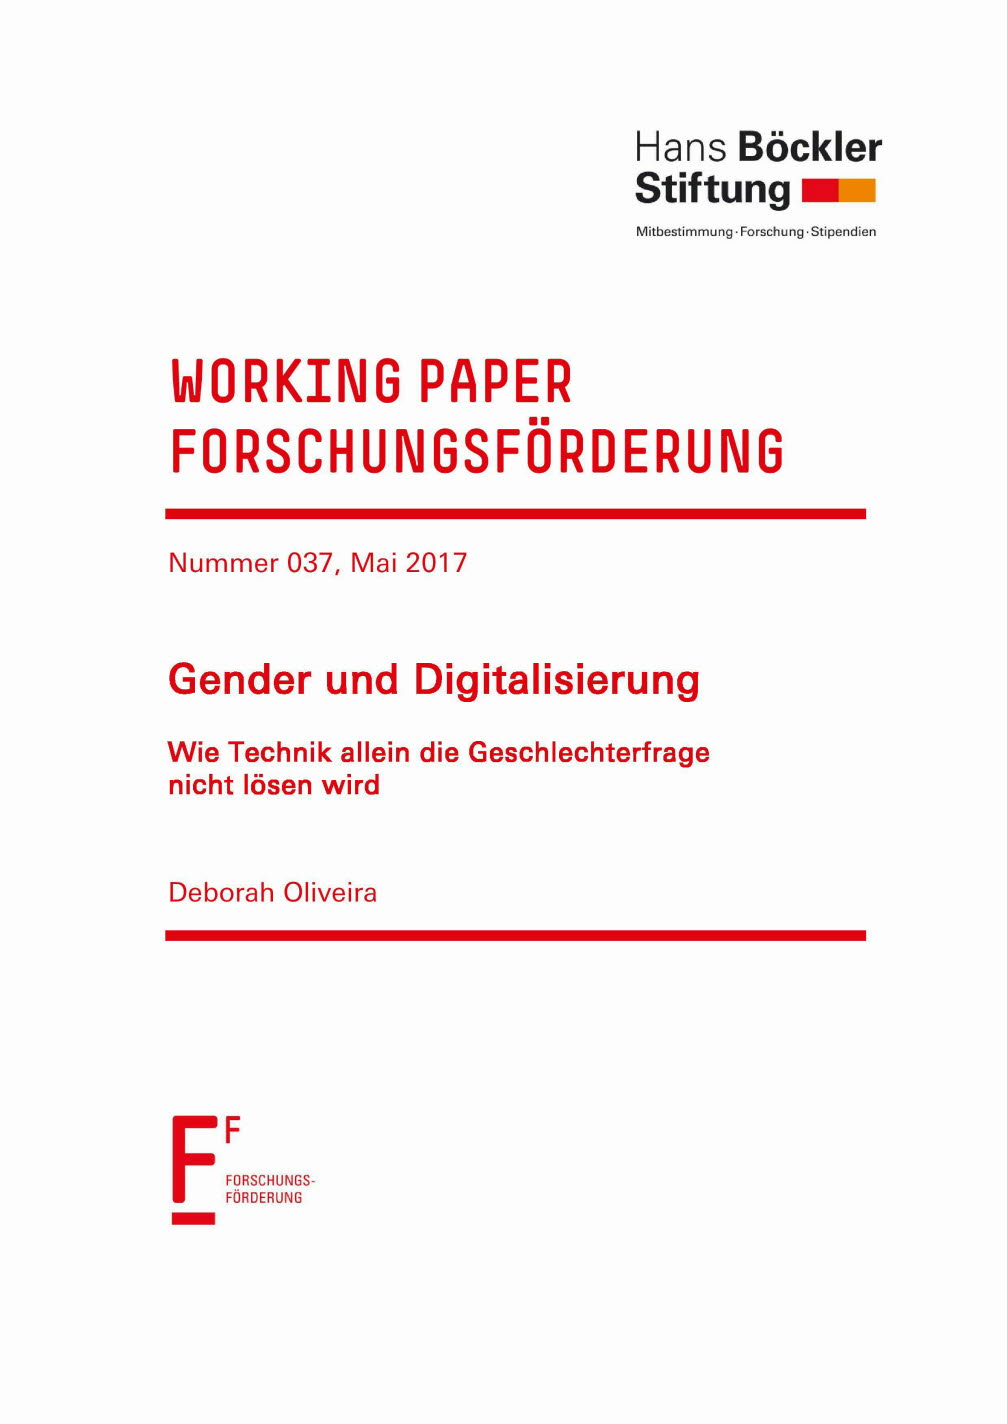 Gender und Digitalisierung